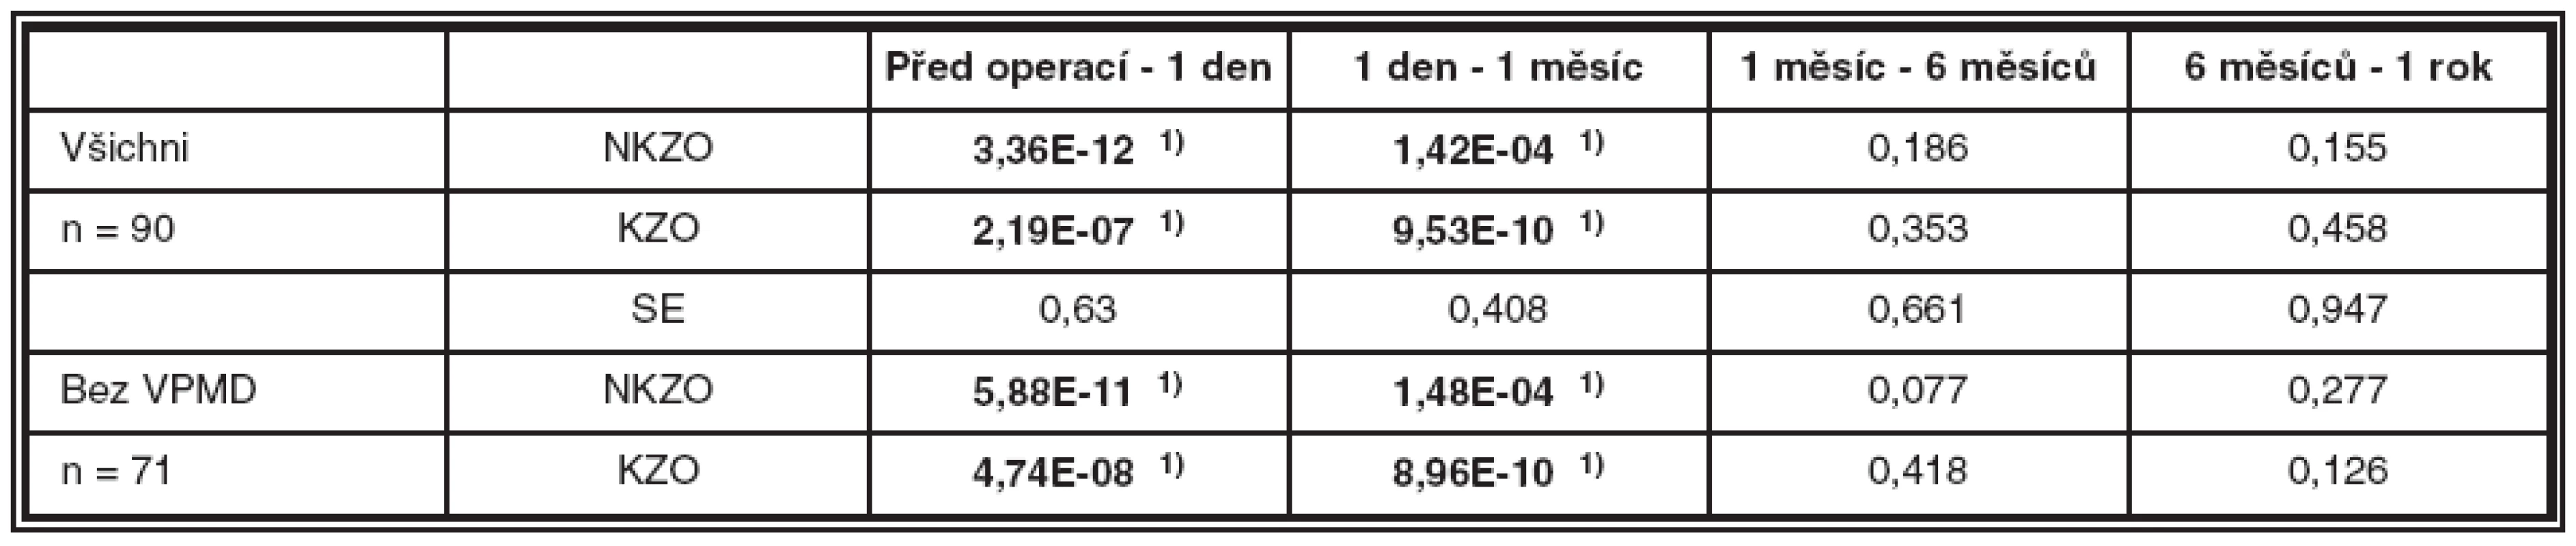 Porovnání NKZO a KZO v čase u všech očí (n = 90) a u očí bez VPMD (n = 71). Výsledky párového t-testu – P hodnoty pro oboustrannou alternativu